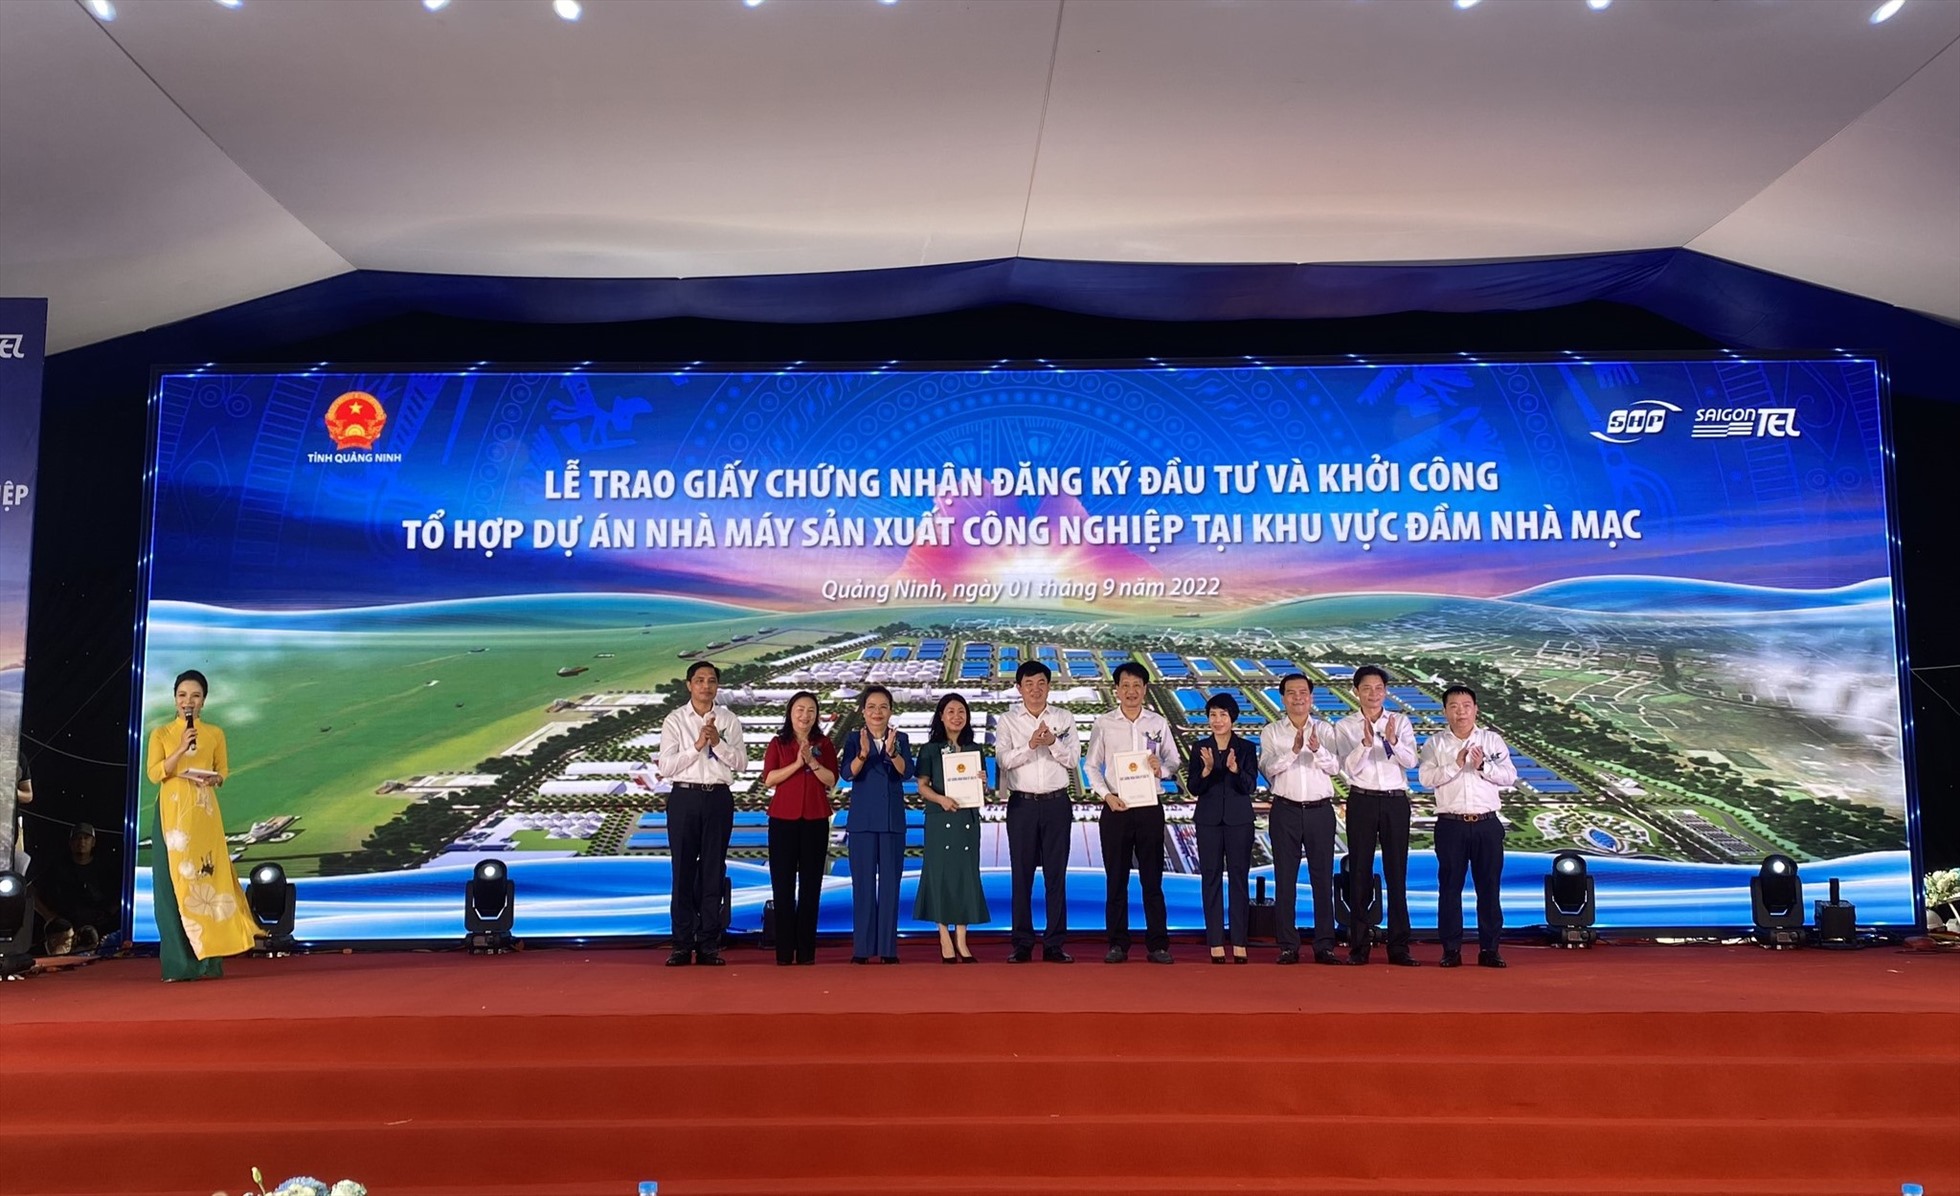 Tỉnh Quảng Ninh cấp giấy chứng nhận đầu tư cho  dự an Nhà máy phụ tùng động cơ máy nông nghiệp tại Đàm Nhà Mạc, thị xã Quảng Yên  với tổng vốn đầu tư 1.248,76 tỷ đồng . Ảnh: T.N.D